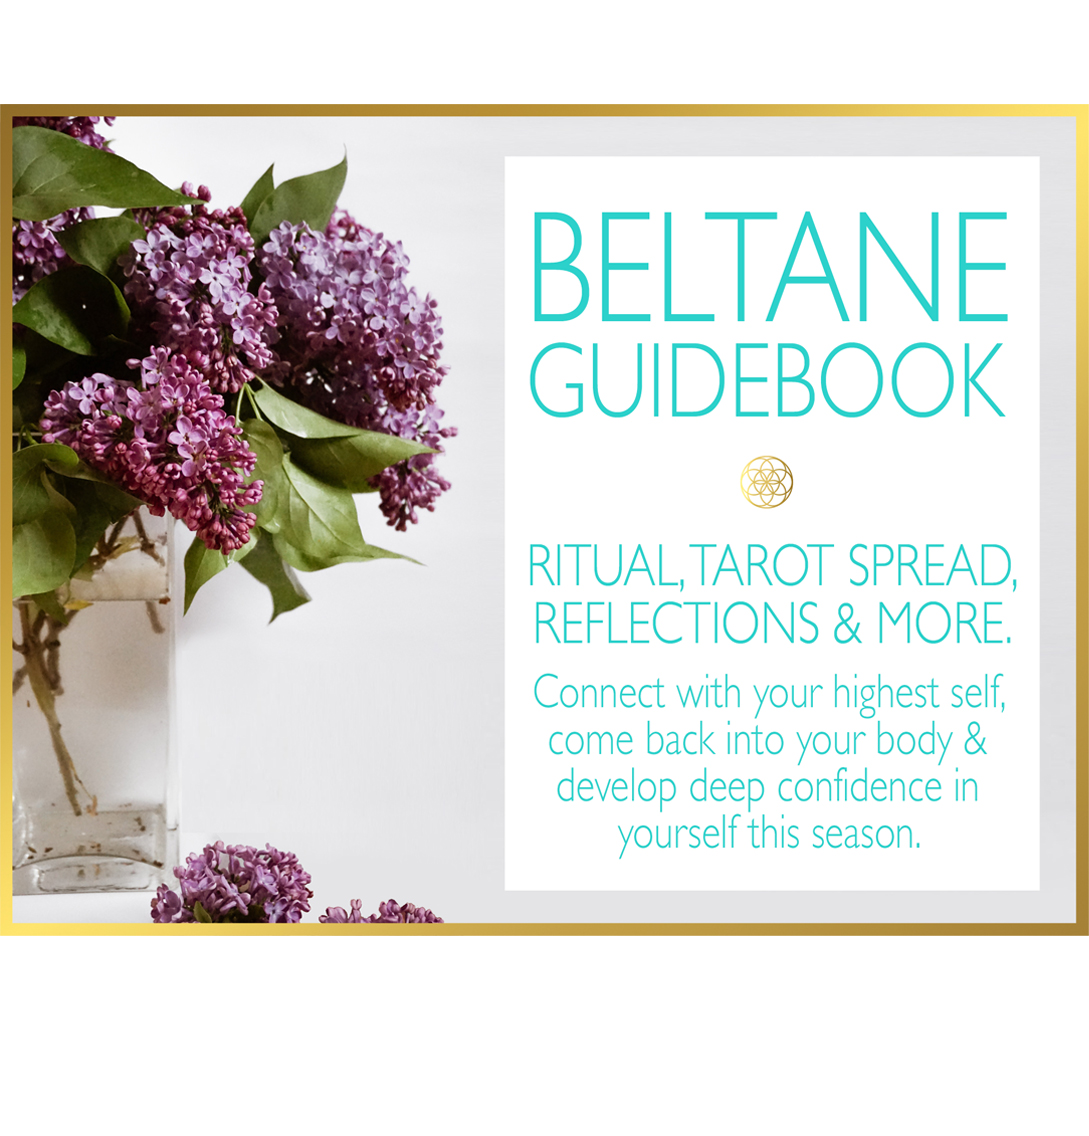 Beltane Guidebook